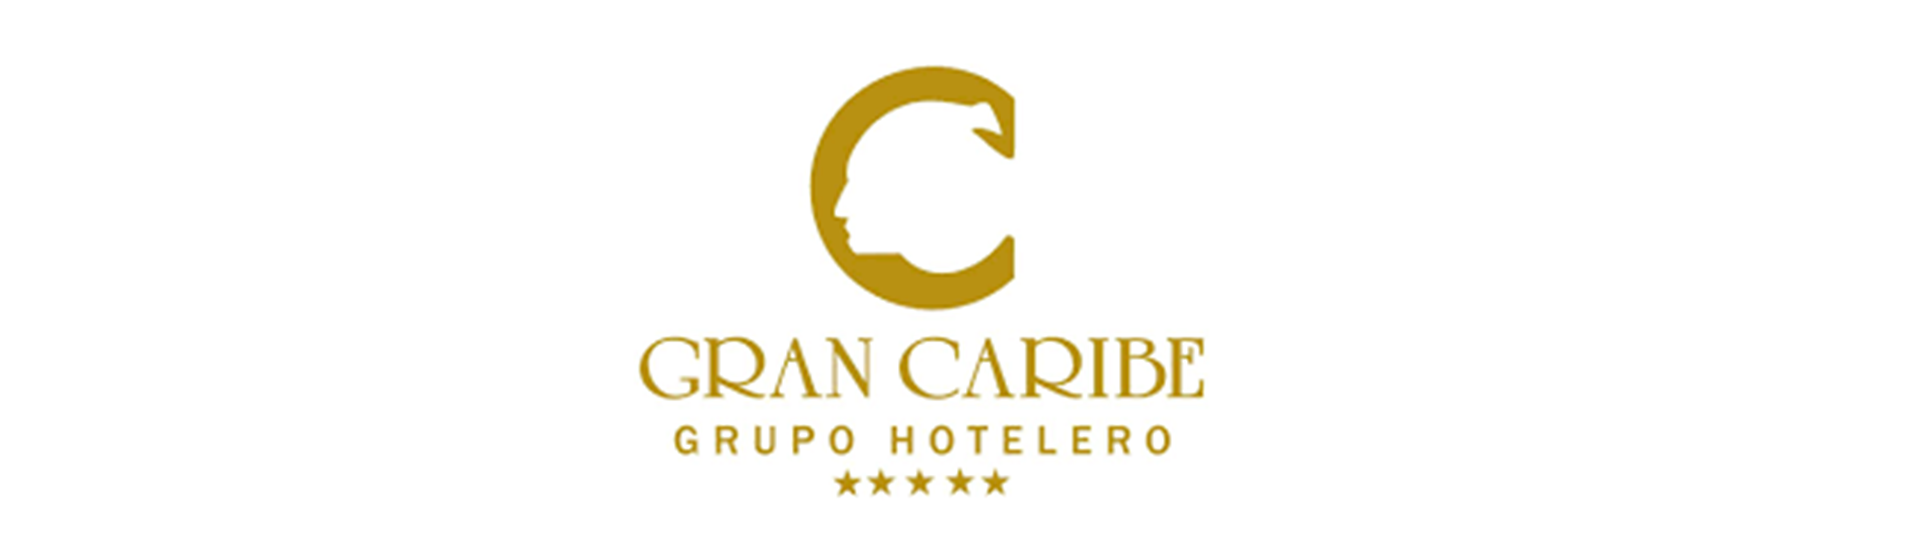 Логотип Отели Gran Caribe Cuba